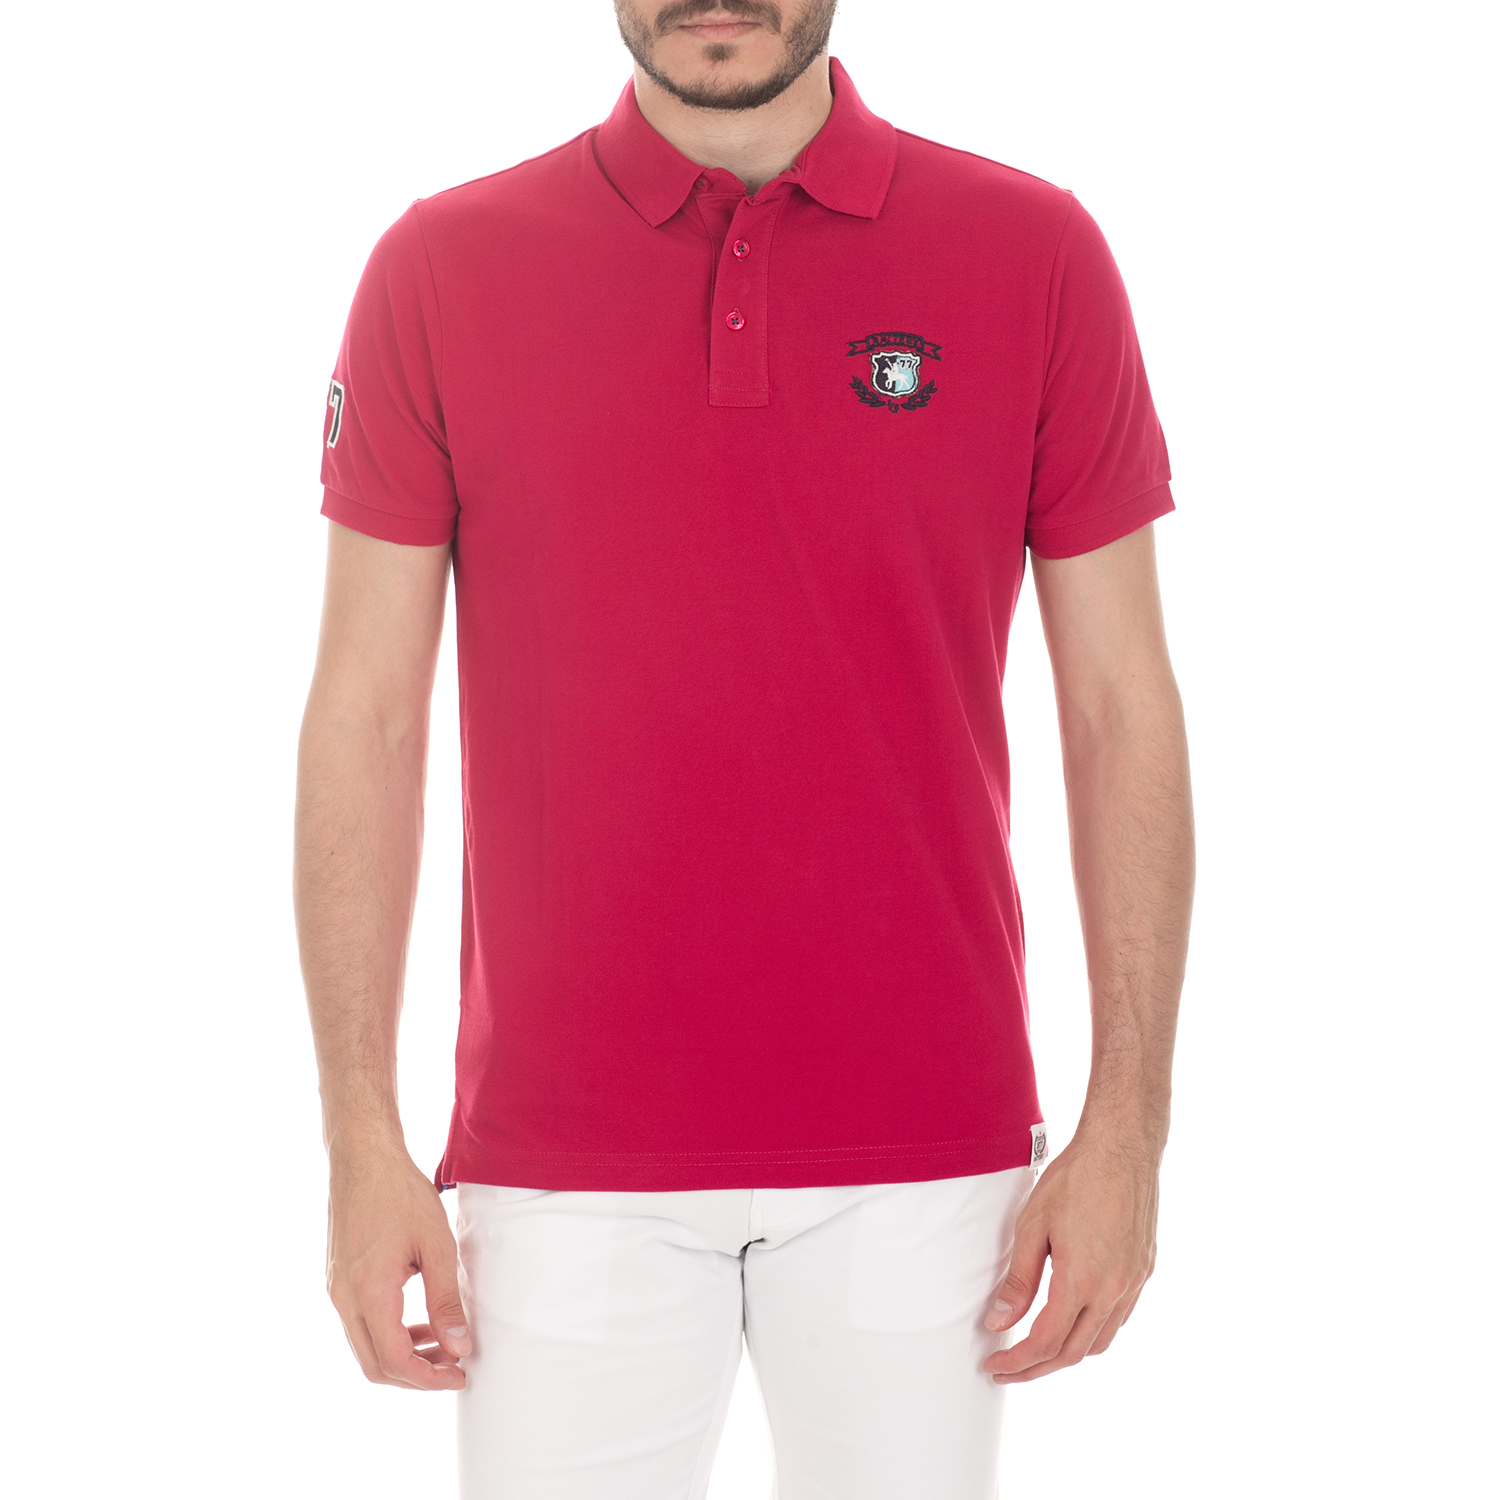 BATTERY - Ανδρική μπλούζα BATTERY κόκκινη Ανδρικά/Ρούχα/Μπλούζες/Πόλο